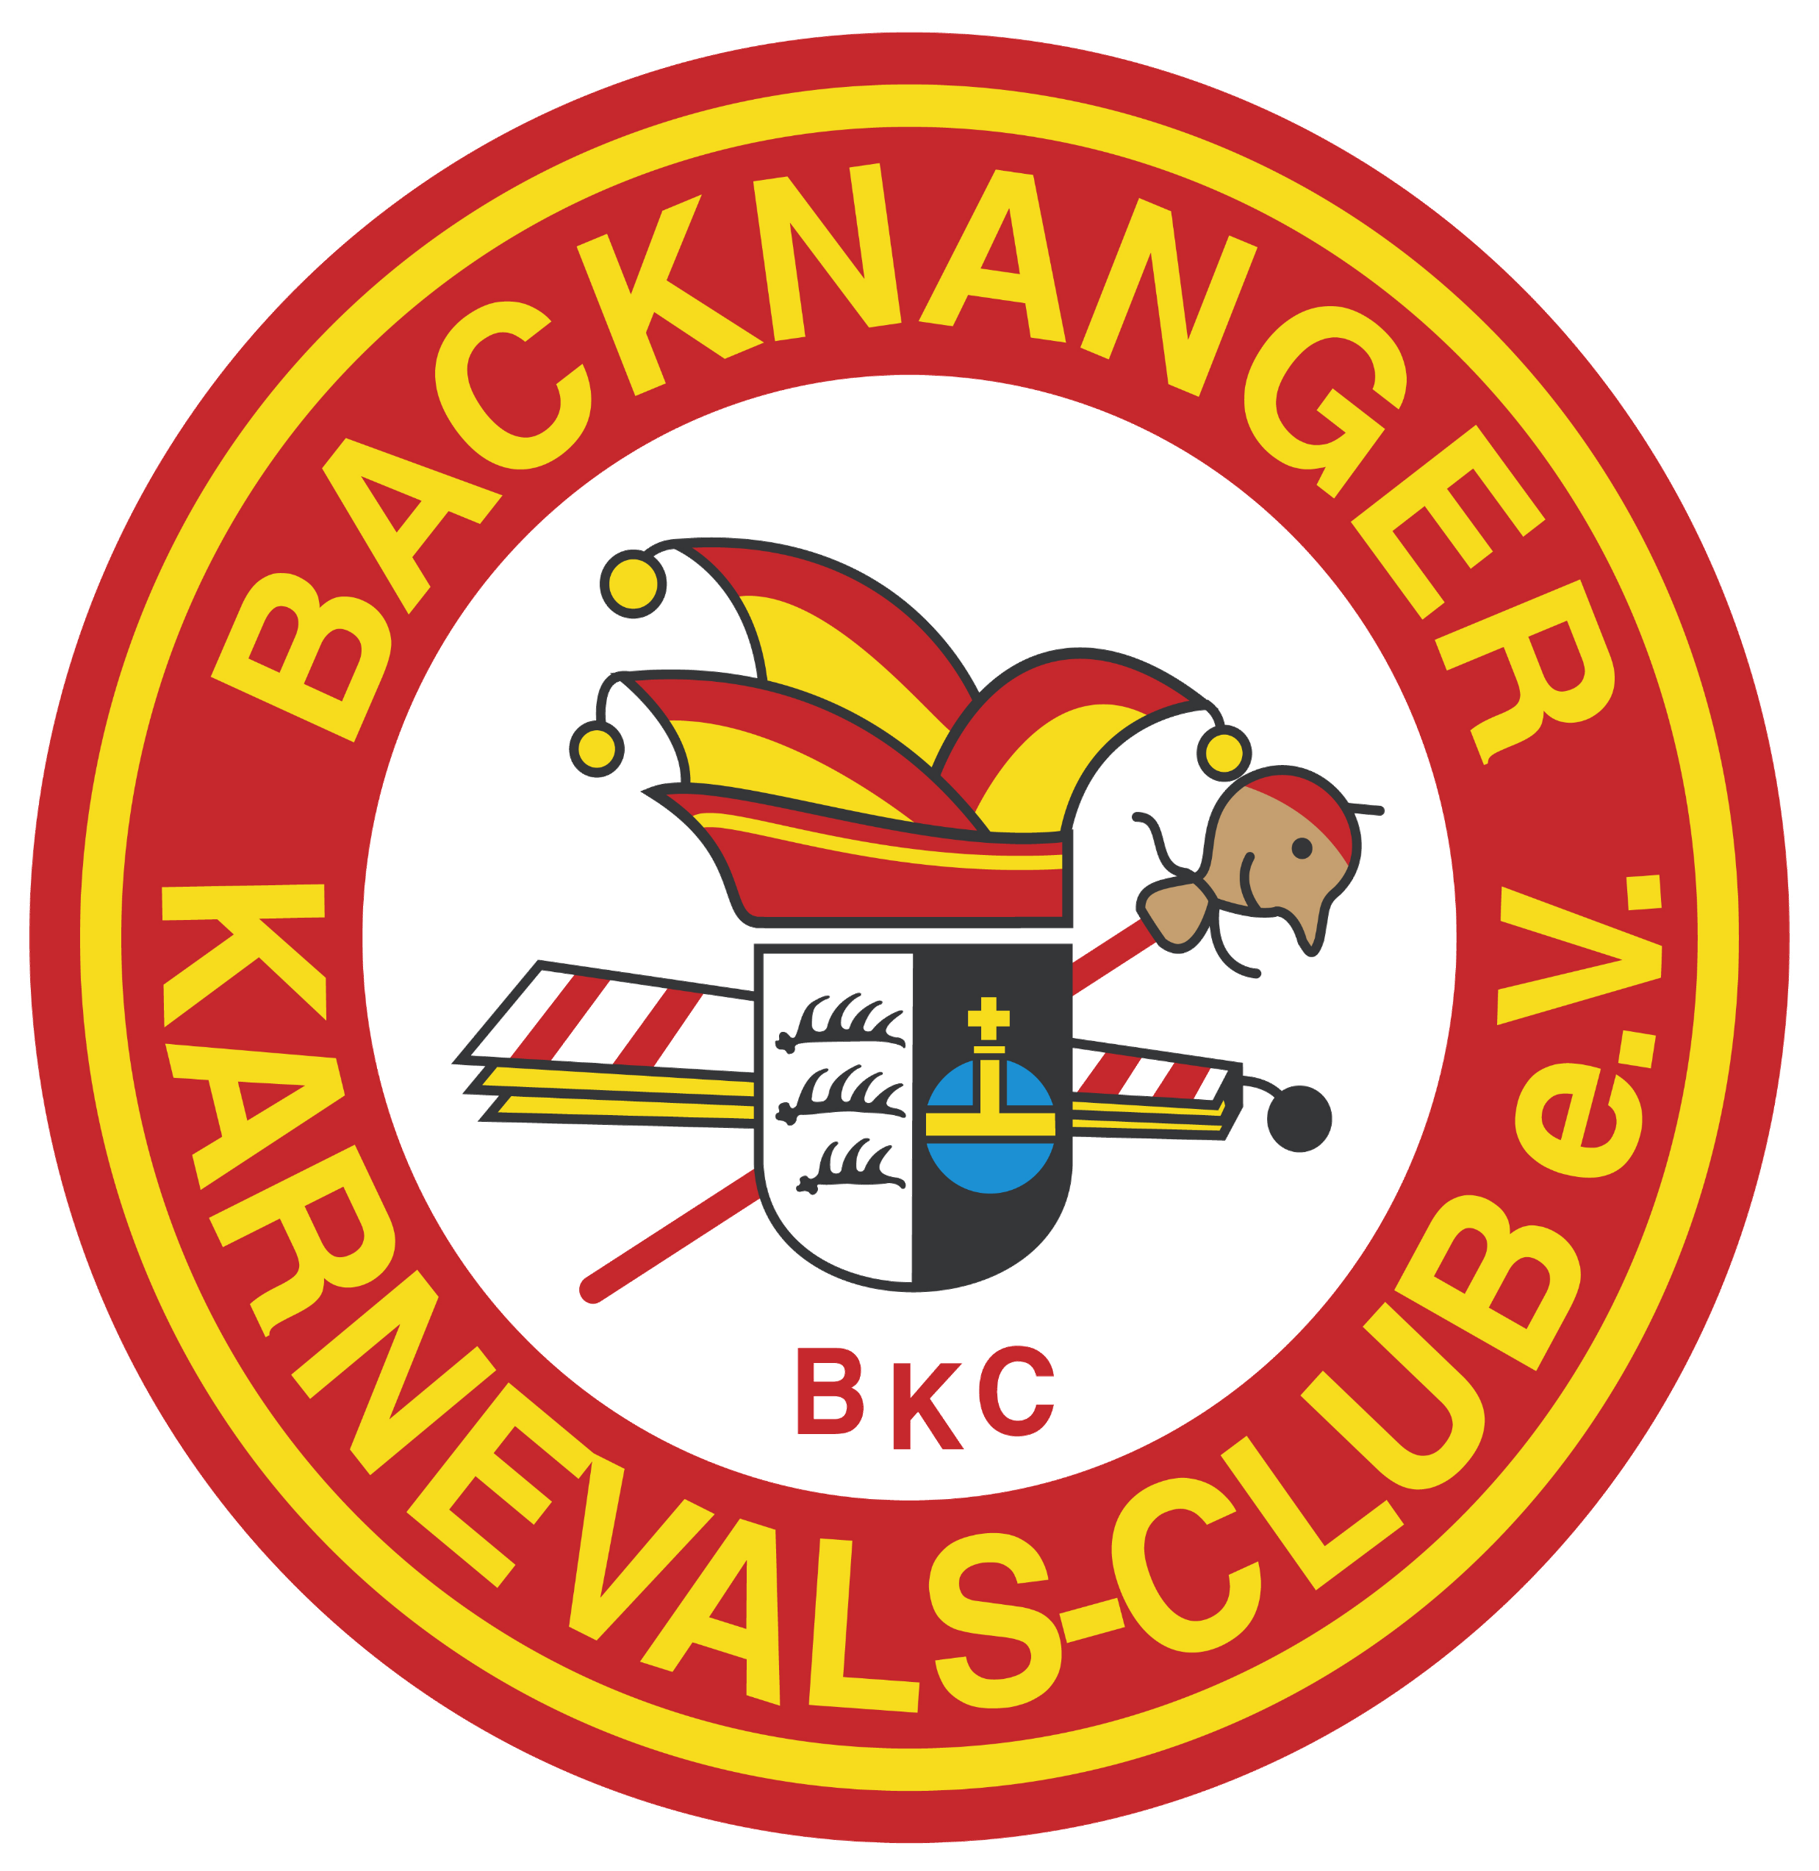 Backnanger Karnevals-Club e.V.